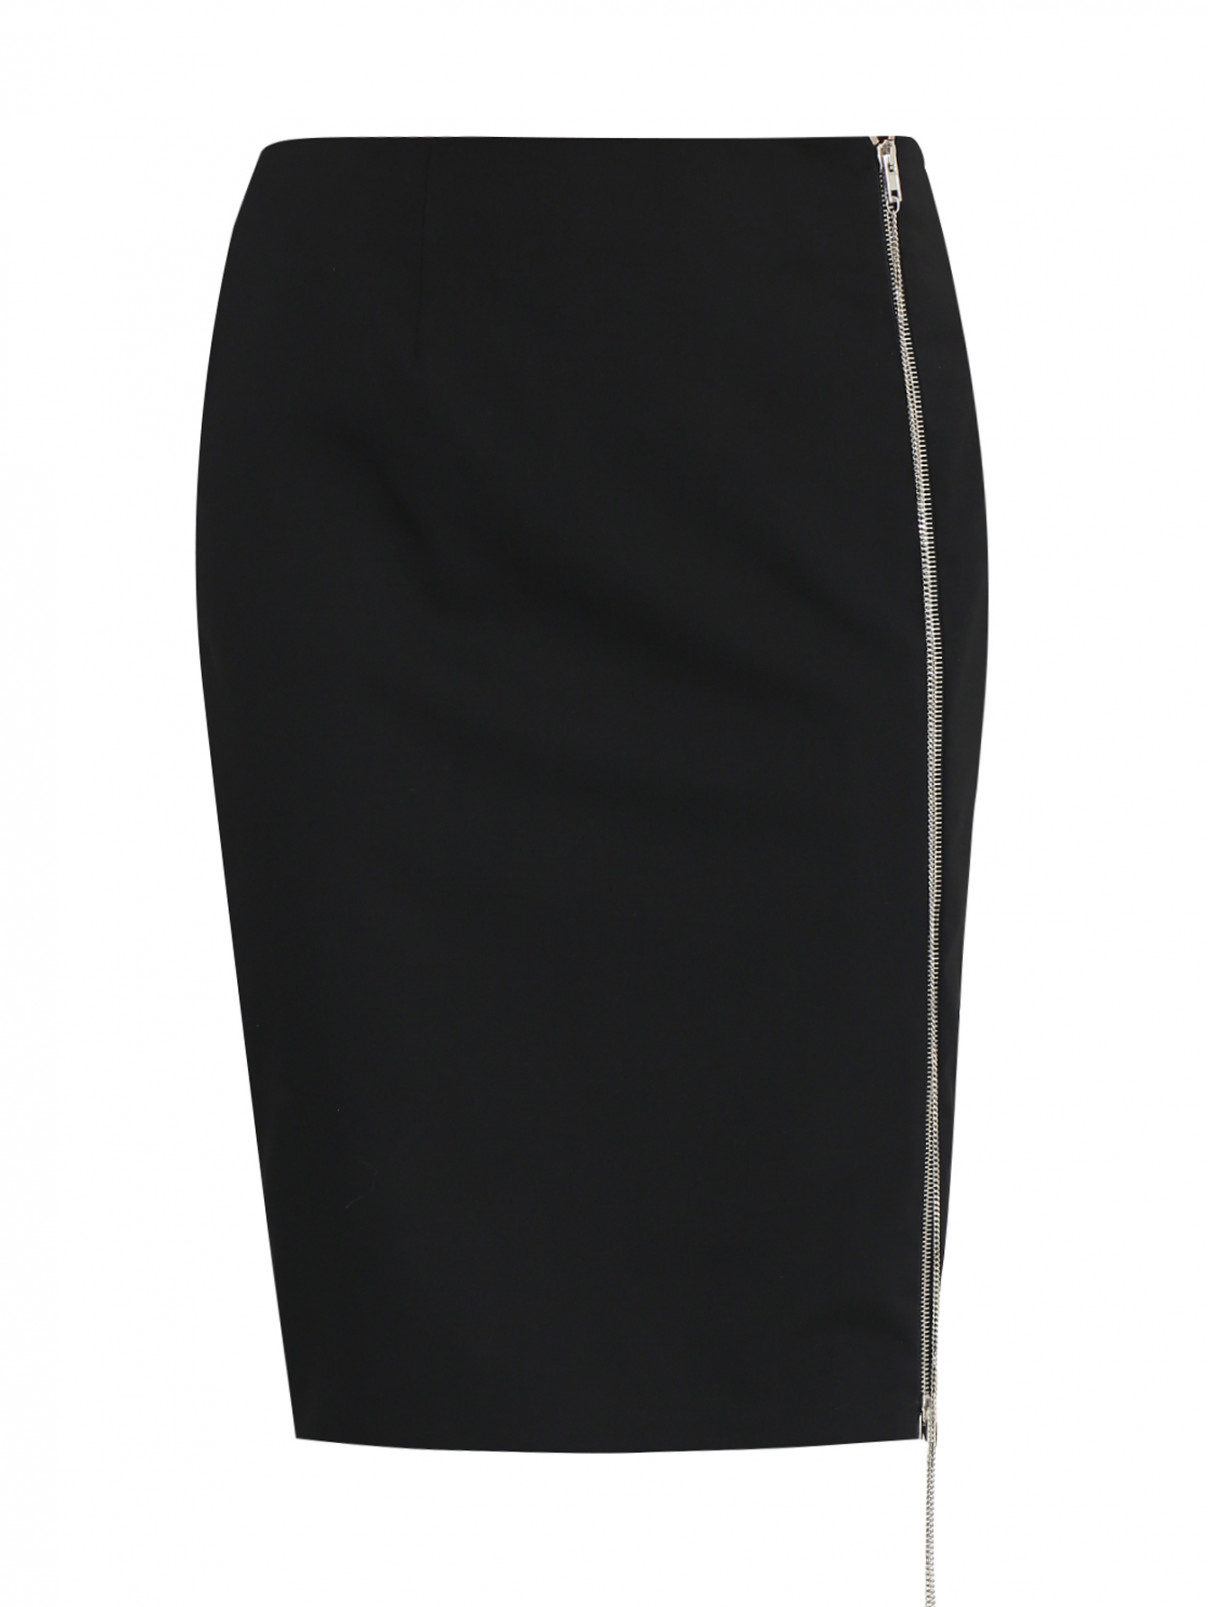 Юбка из шерсти с декоративной молнией Jean Paul Gaultier  –  Общий вид  – Цвет:  Черный